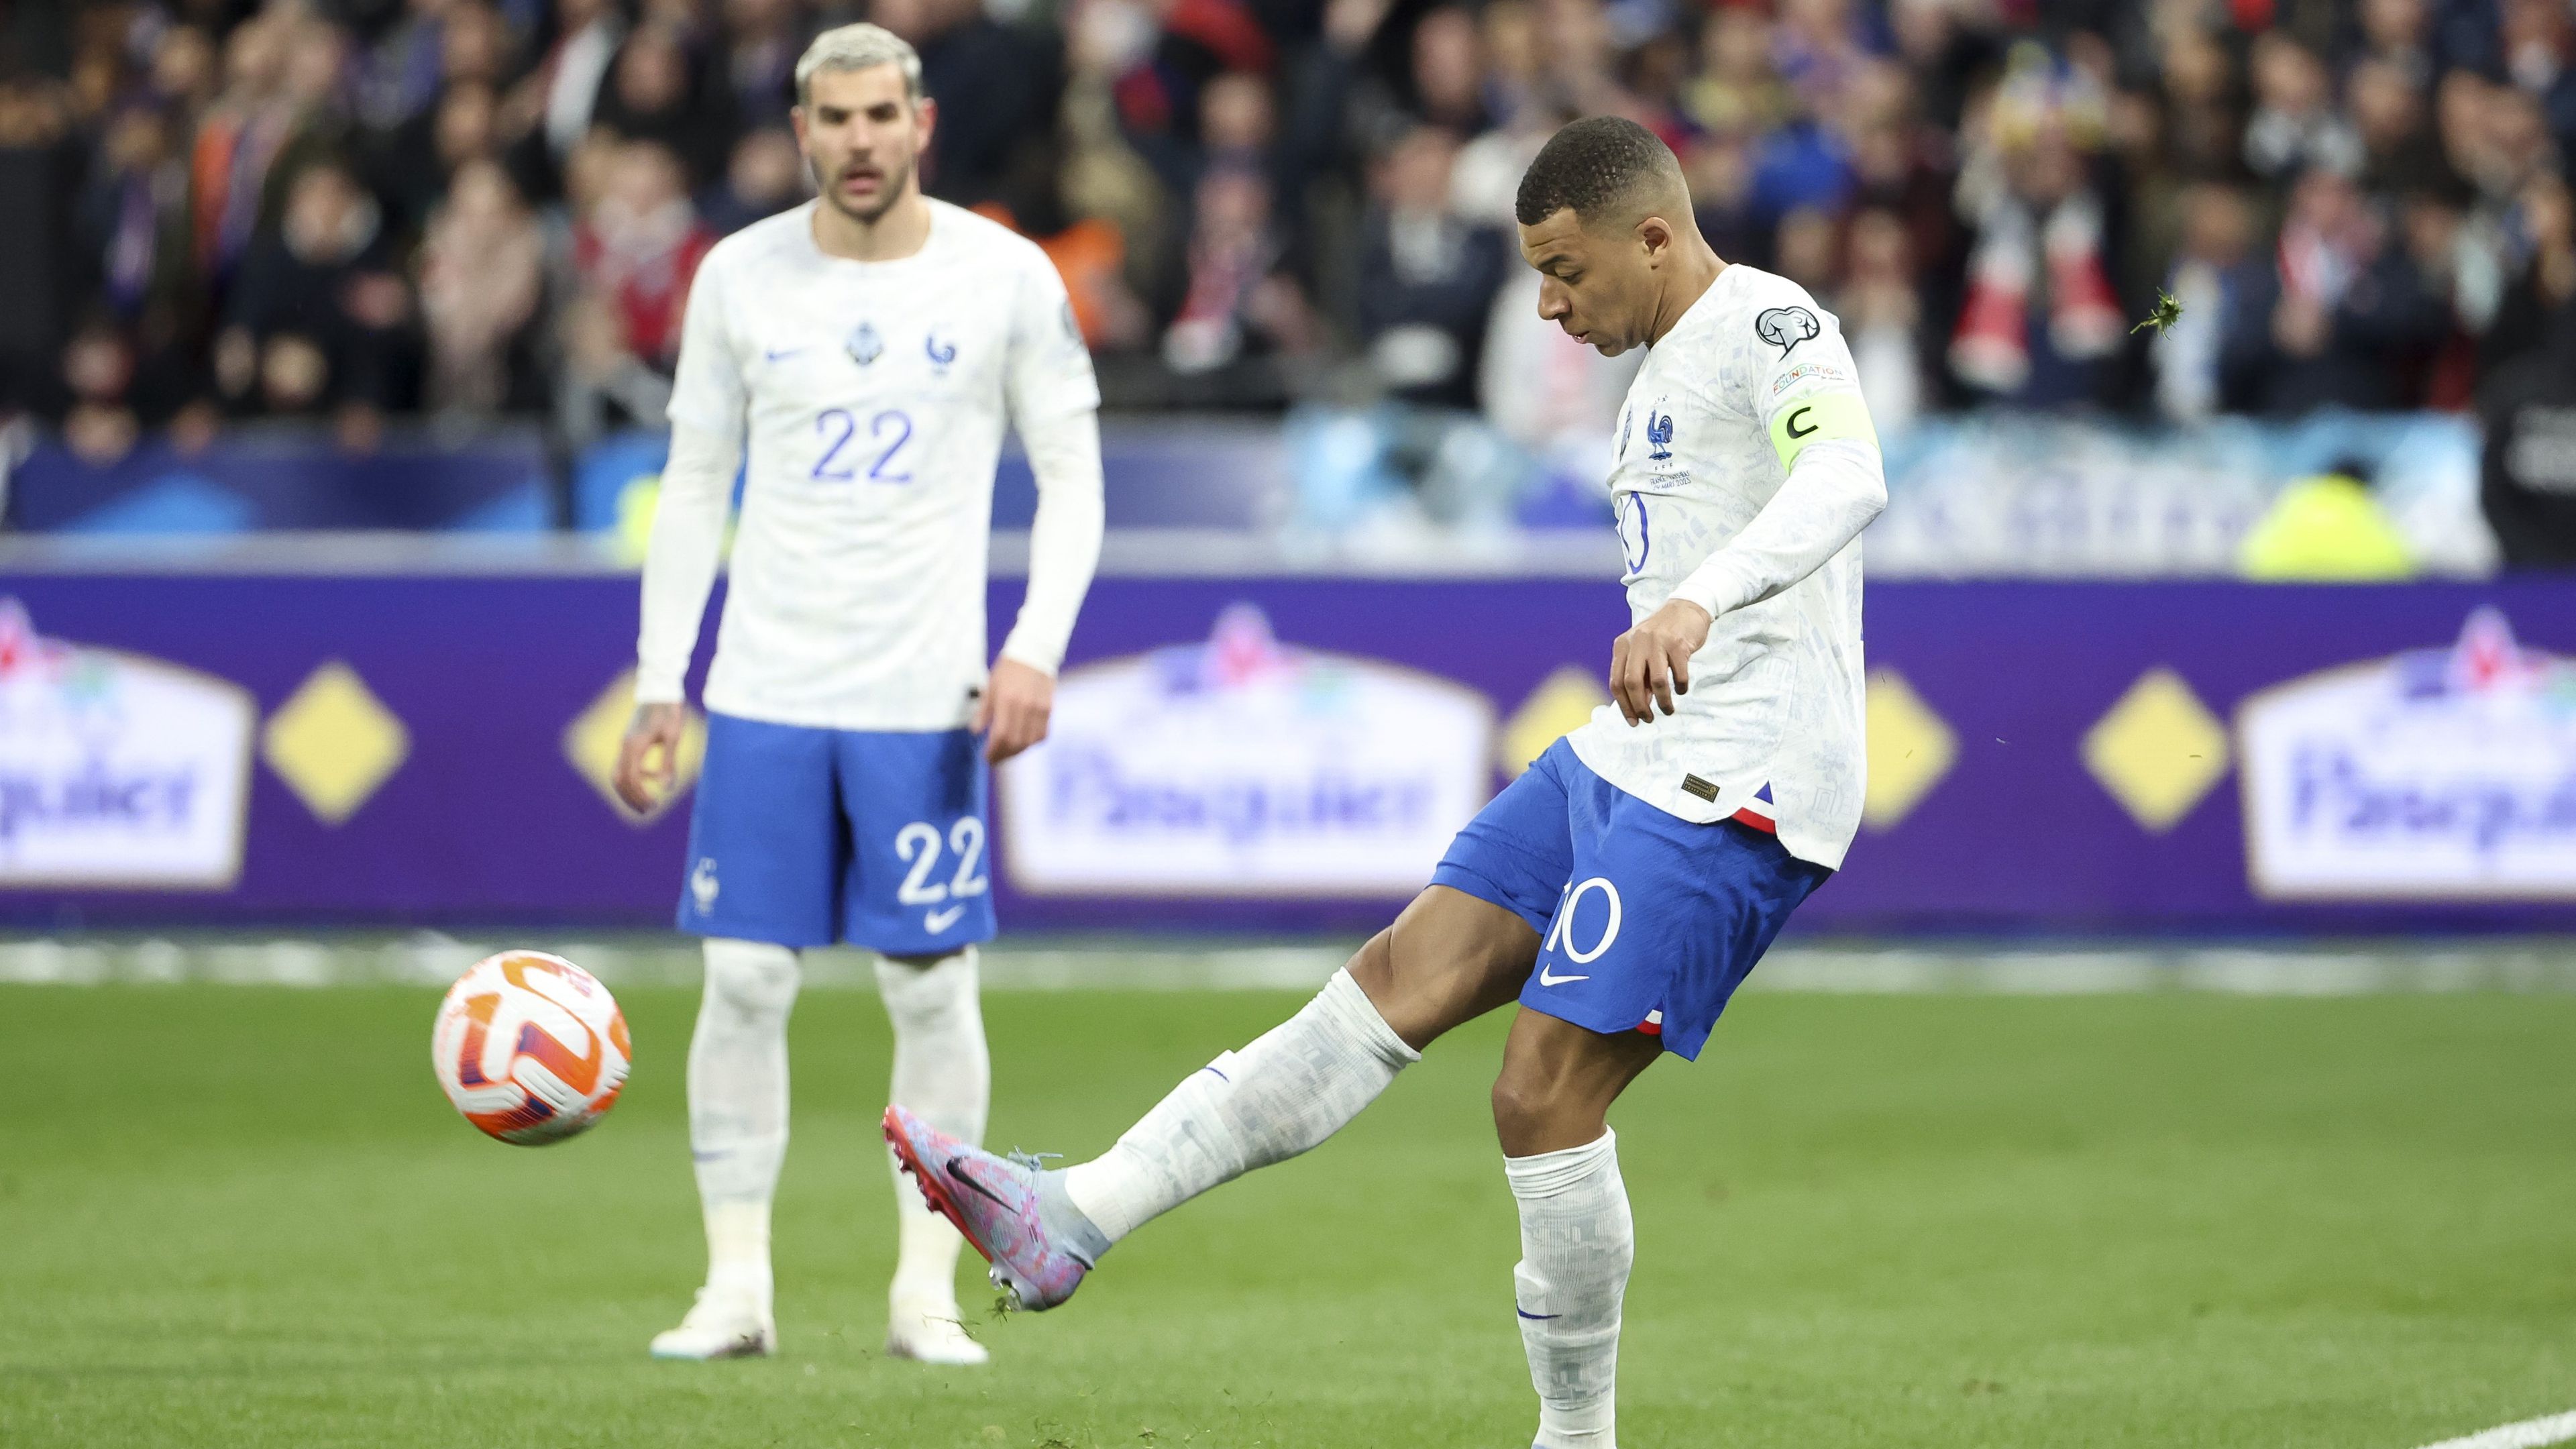 A Hollandia elleni győzelem után folytatná a menetelést a francia válogatott